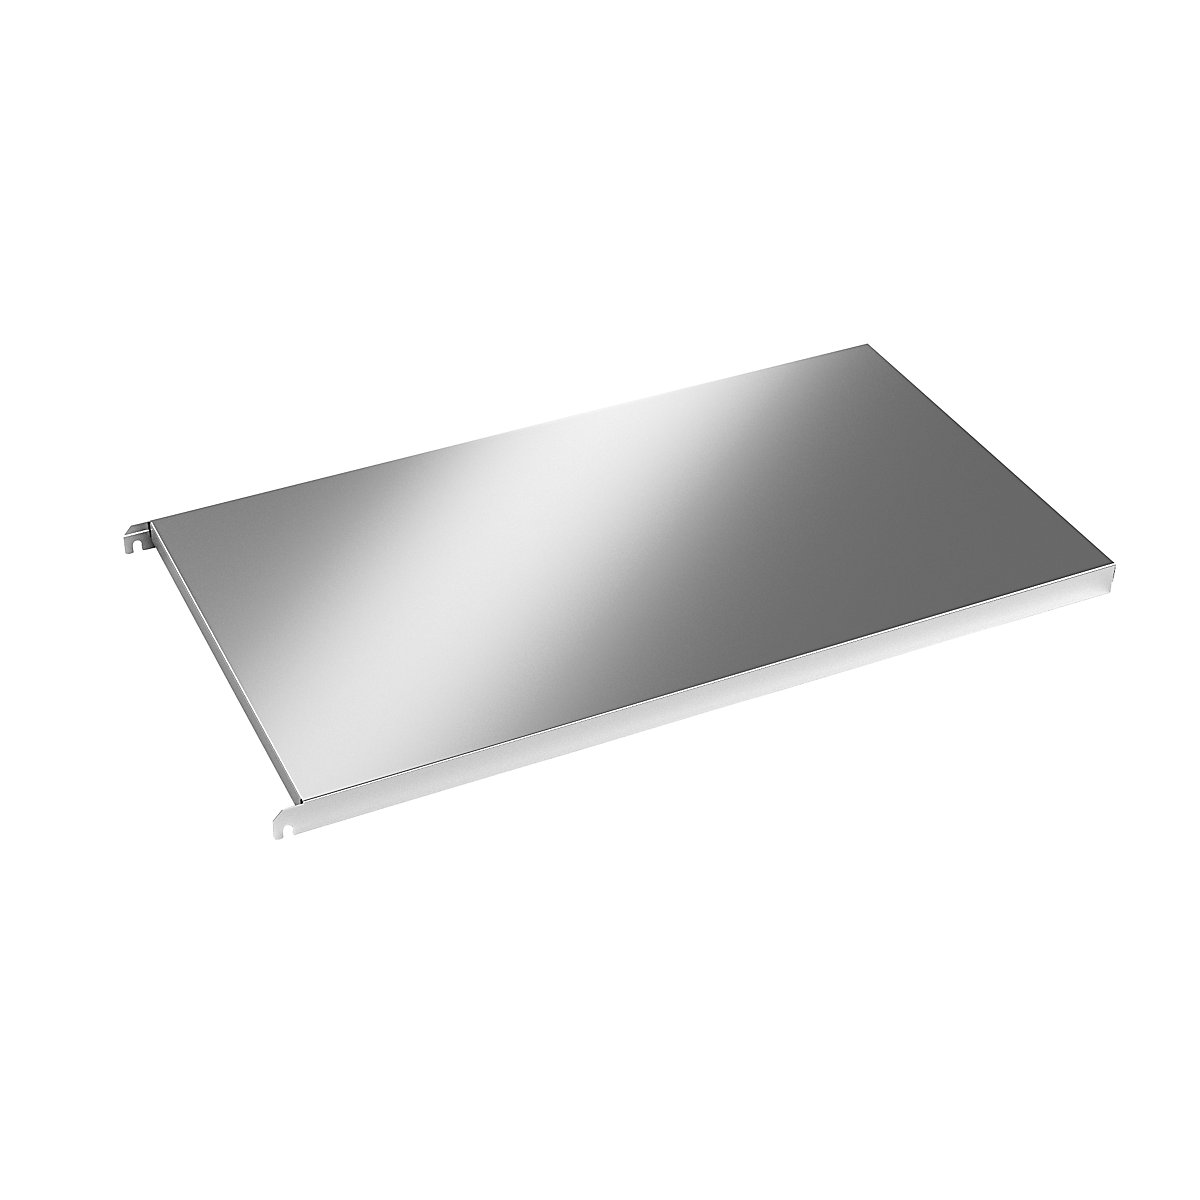 Stainless steel shelf, smooth corner shelf, WxD 940 x 540 mm